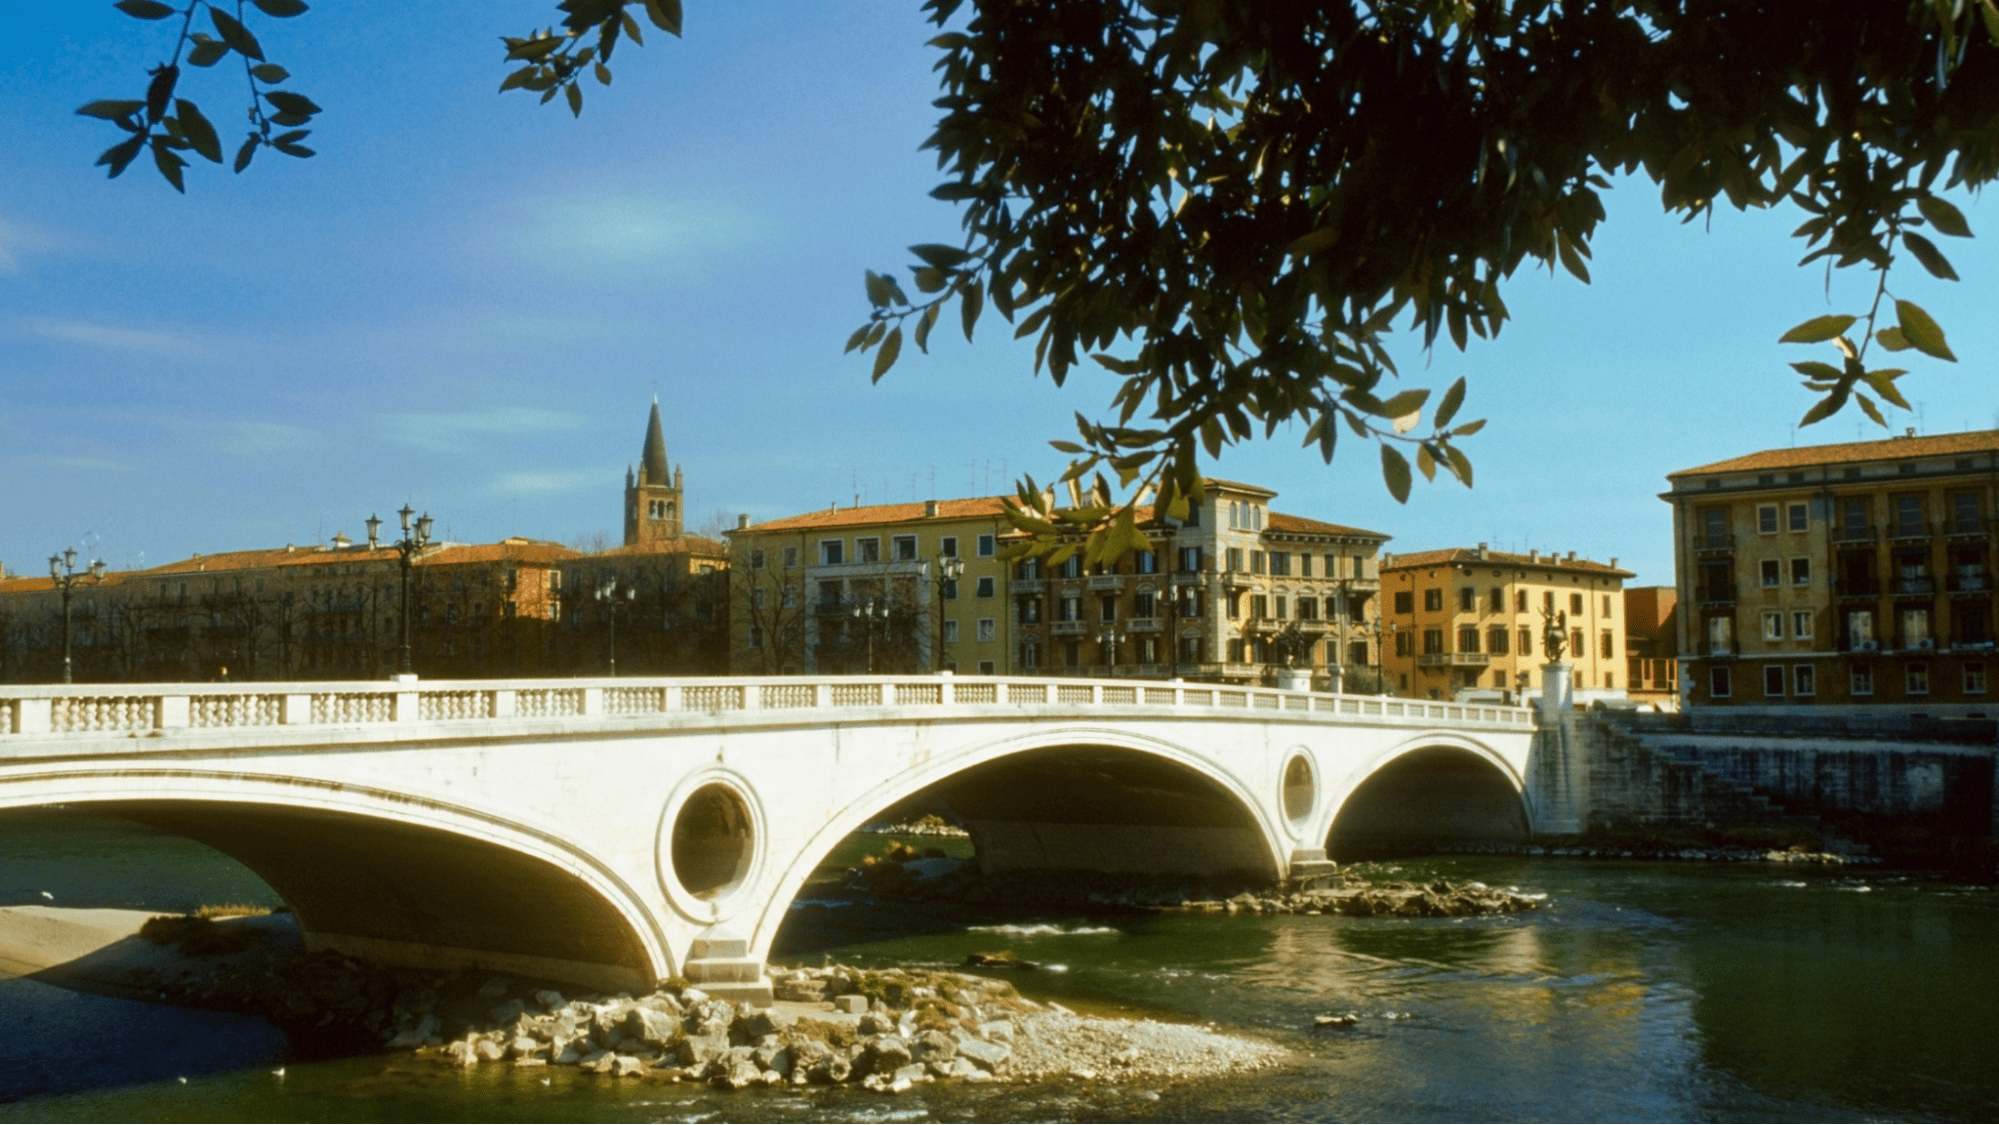 Bridge over water in an Italian town